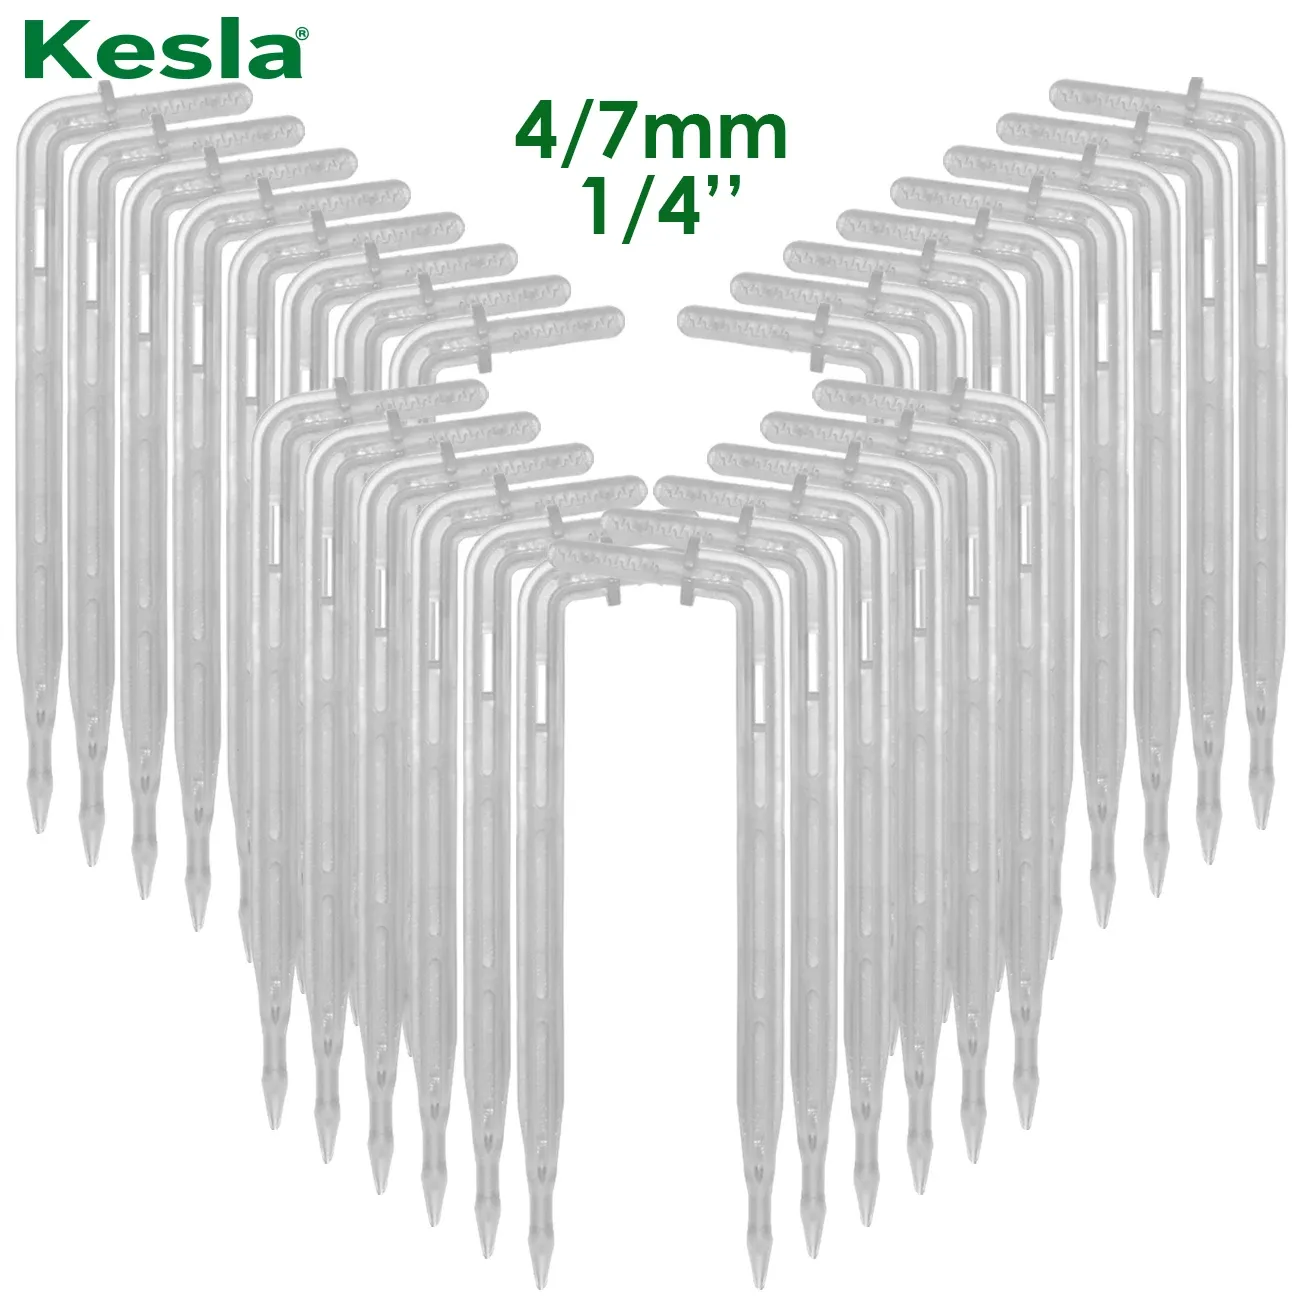 Dekoracje Kesla 50x przezroczysty gend strzałka 1/4 '' '4/7 mm wąż kroplowy emiter emiter oszczędzanie zraszacza Garden Micro irygacja szklarnia